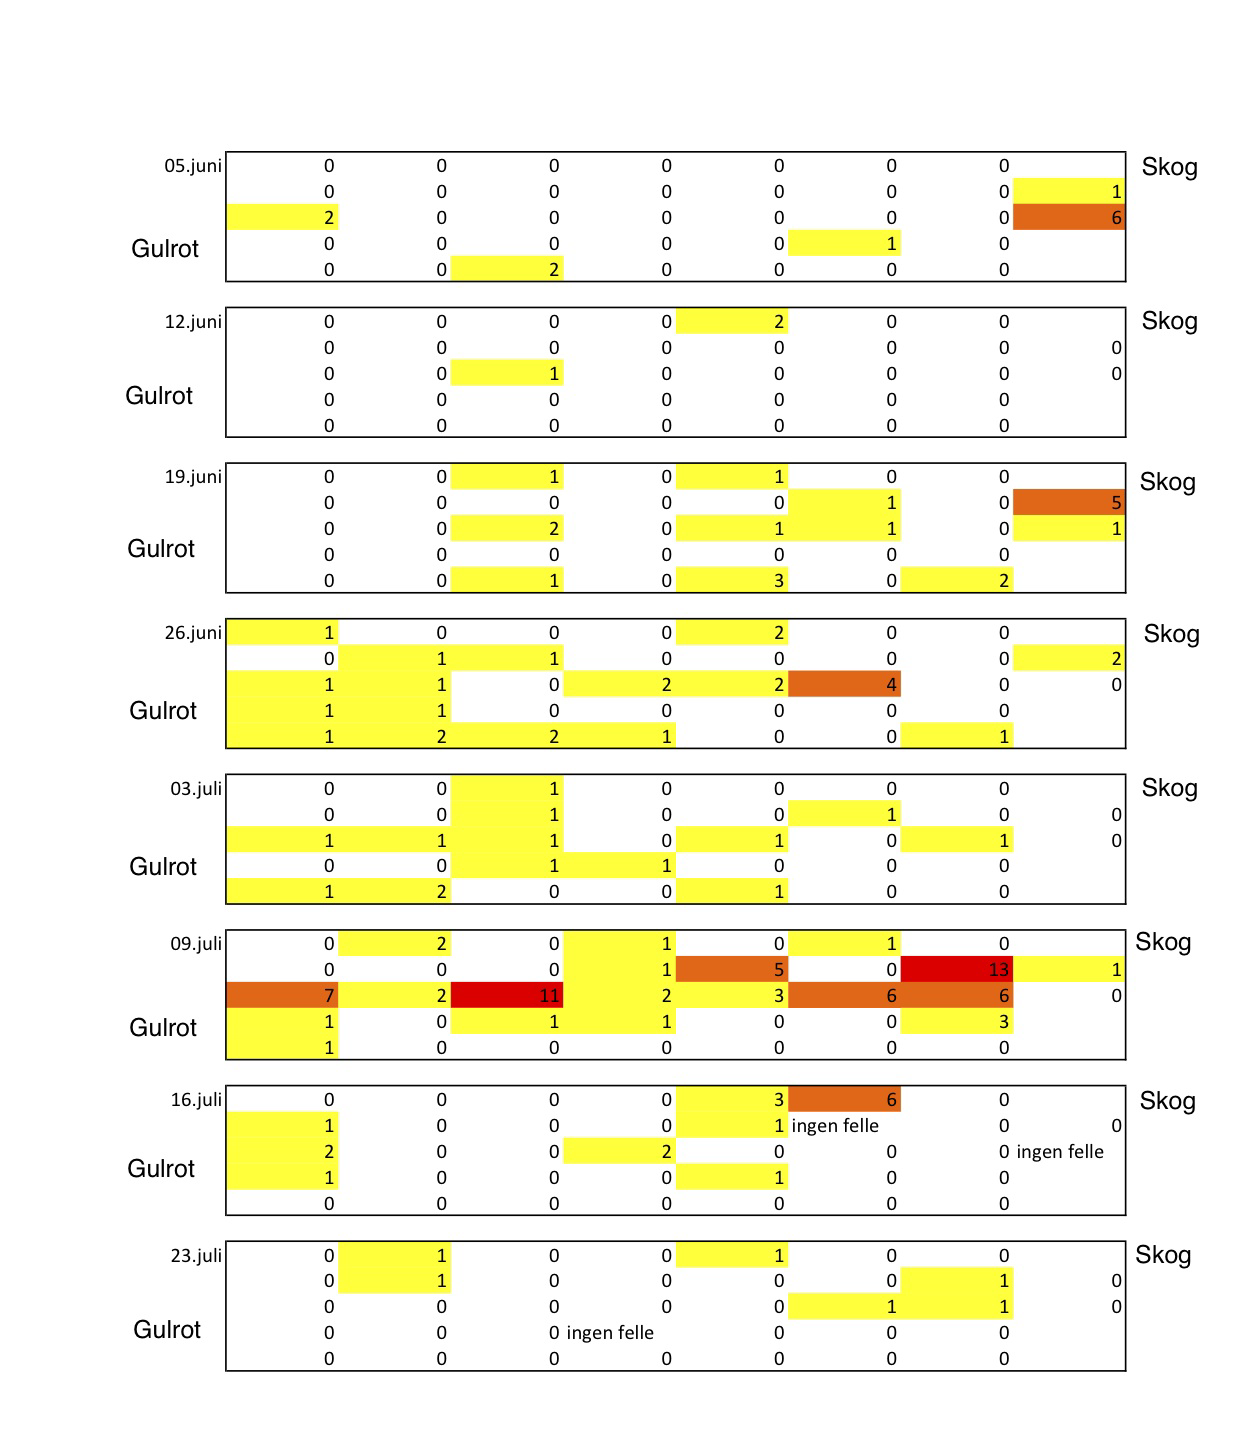 Figuren over viser fangsten av gulrotsugere fra 5. juni til 23. juli på de 37 limfellene som var lagt ut i en grid. Hver firkant representerer grid-en for en dato.